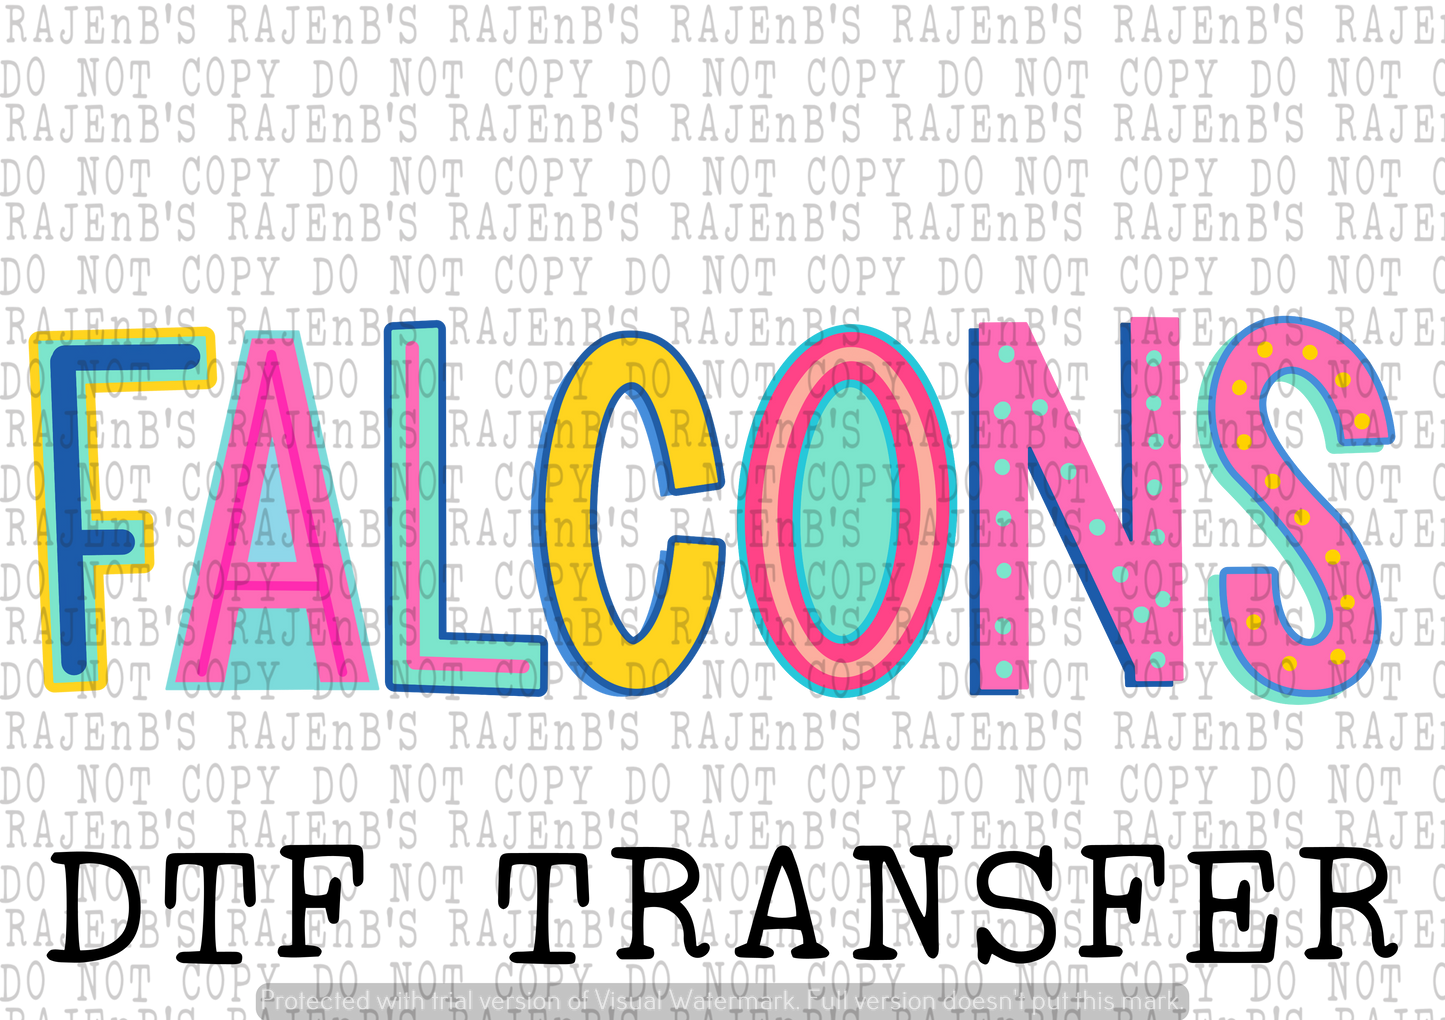 Falcons Mascot (DTF) 3021